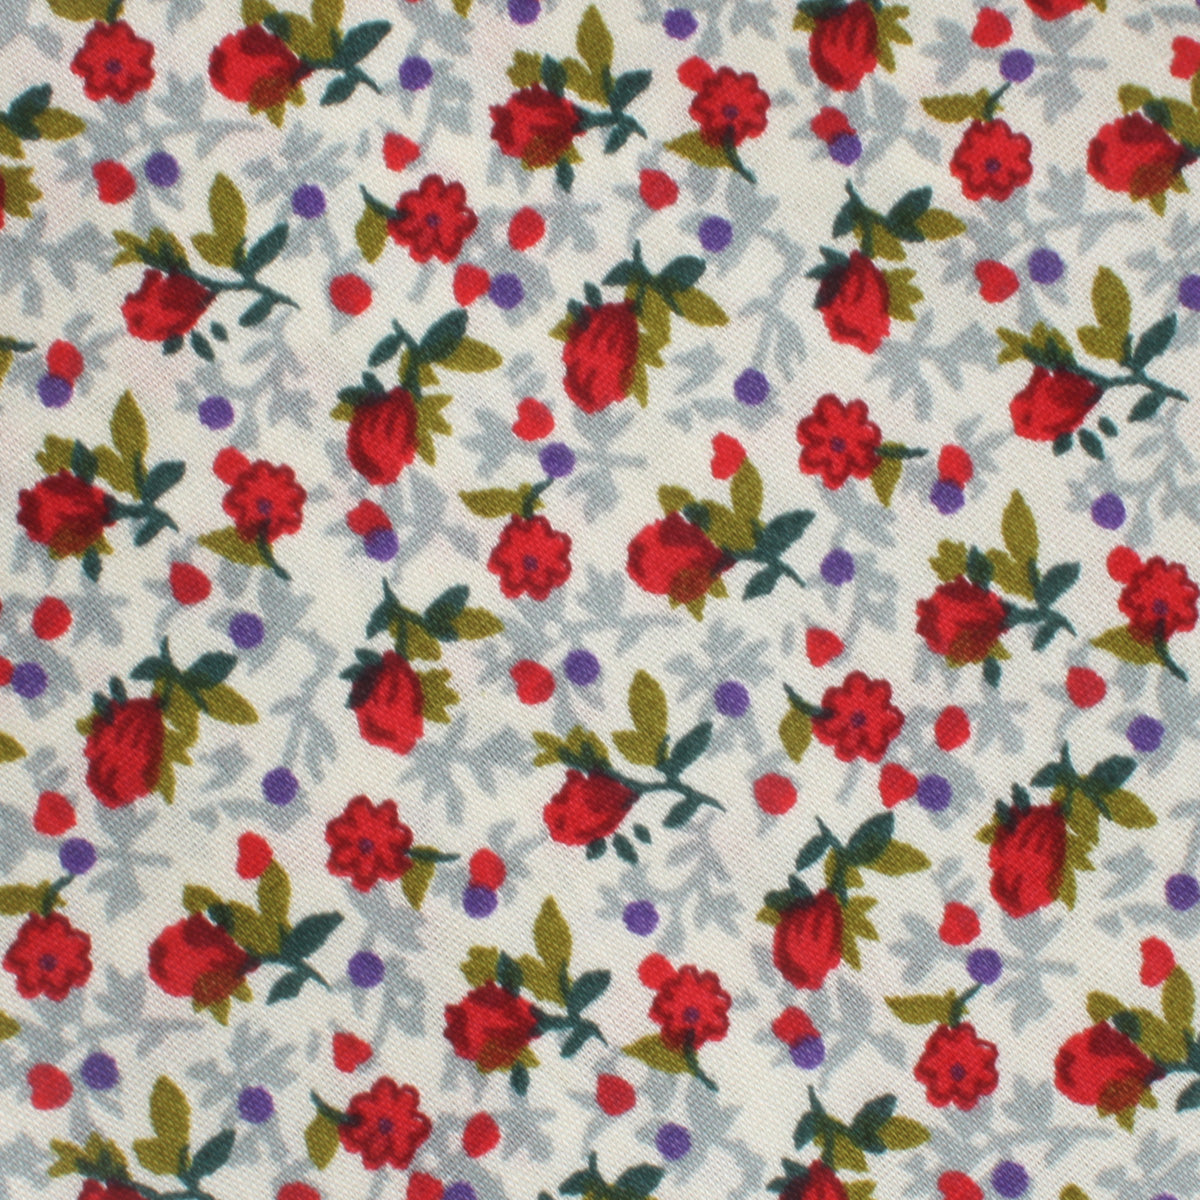 Scarlet Pimpernel Rose Pocket Square Fabric